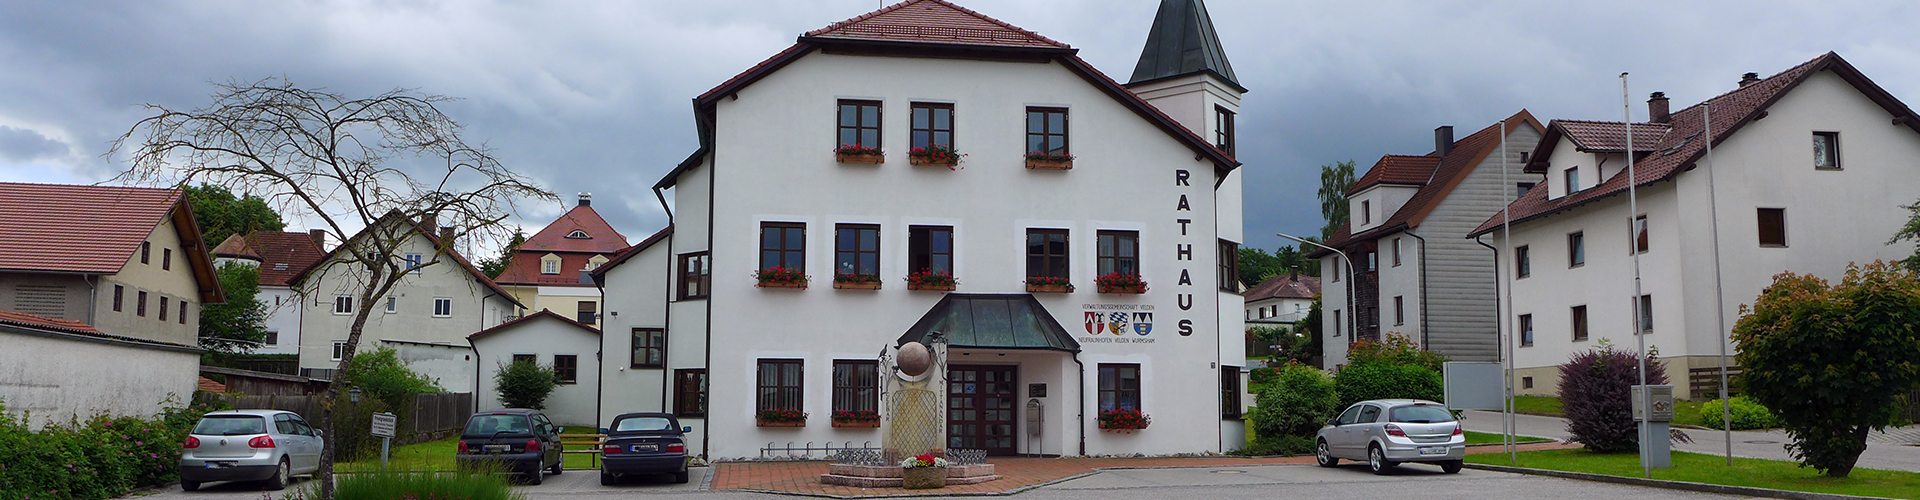 Rathaus Verwaltungsgemeinschaft und Markt Velden